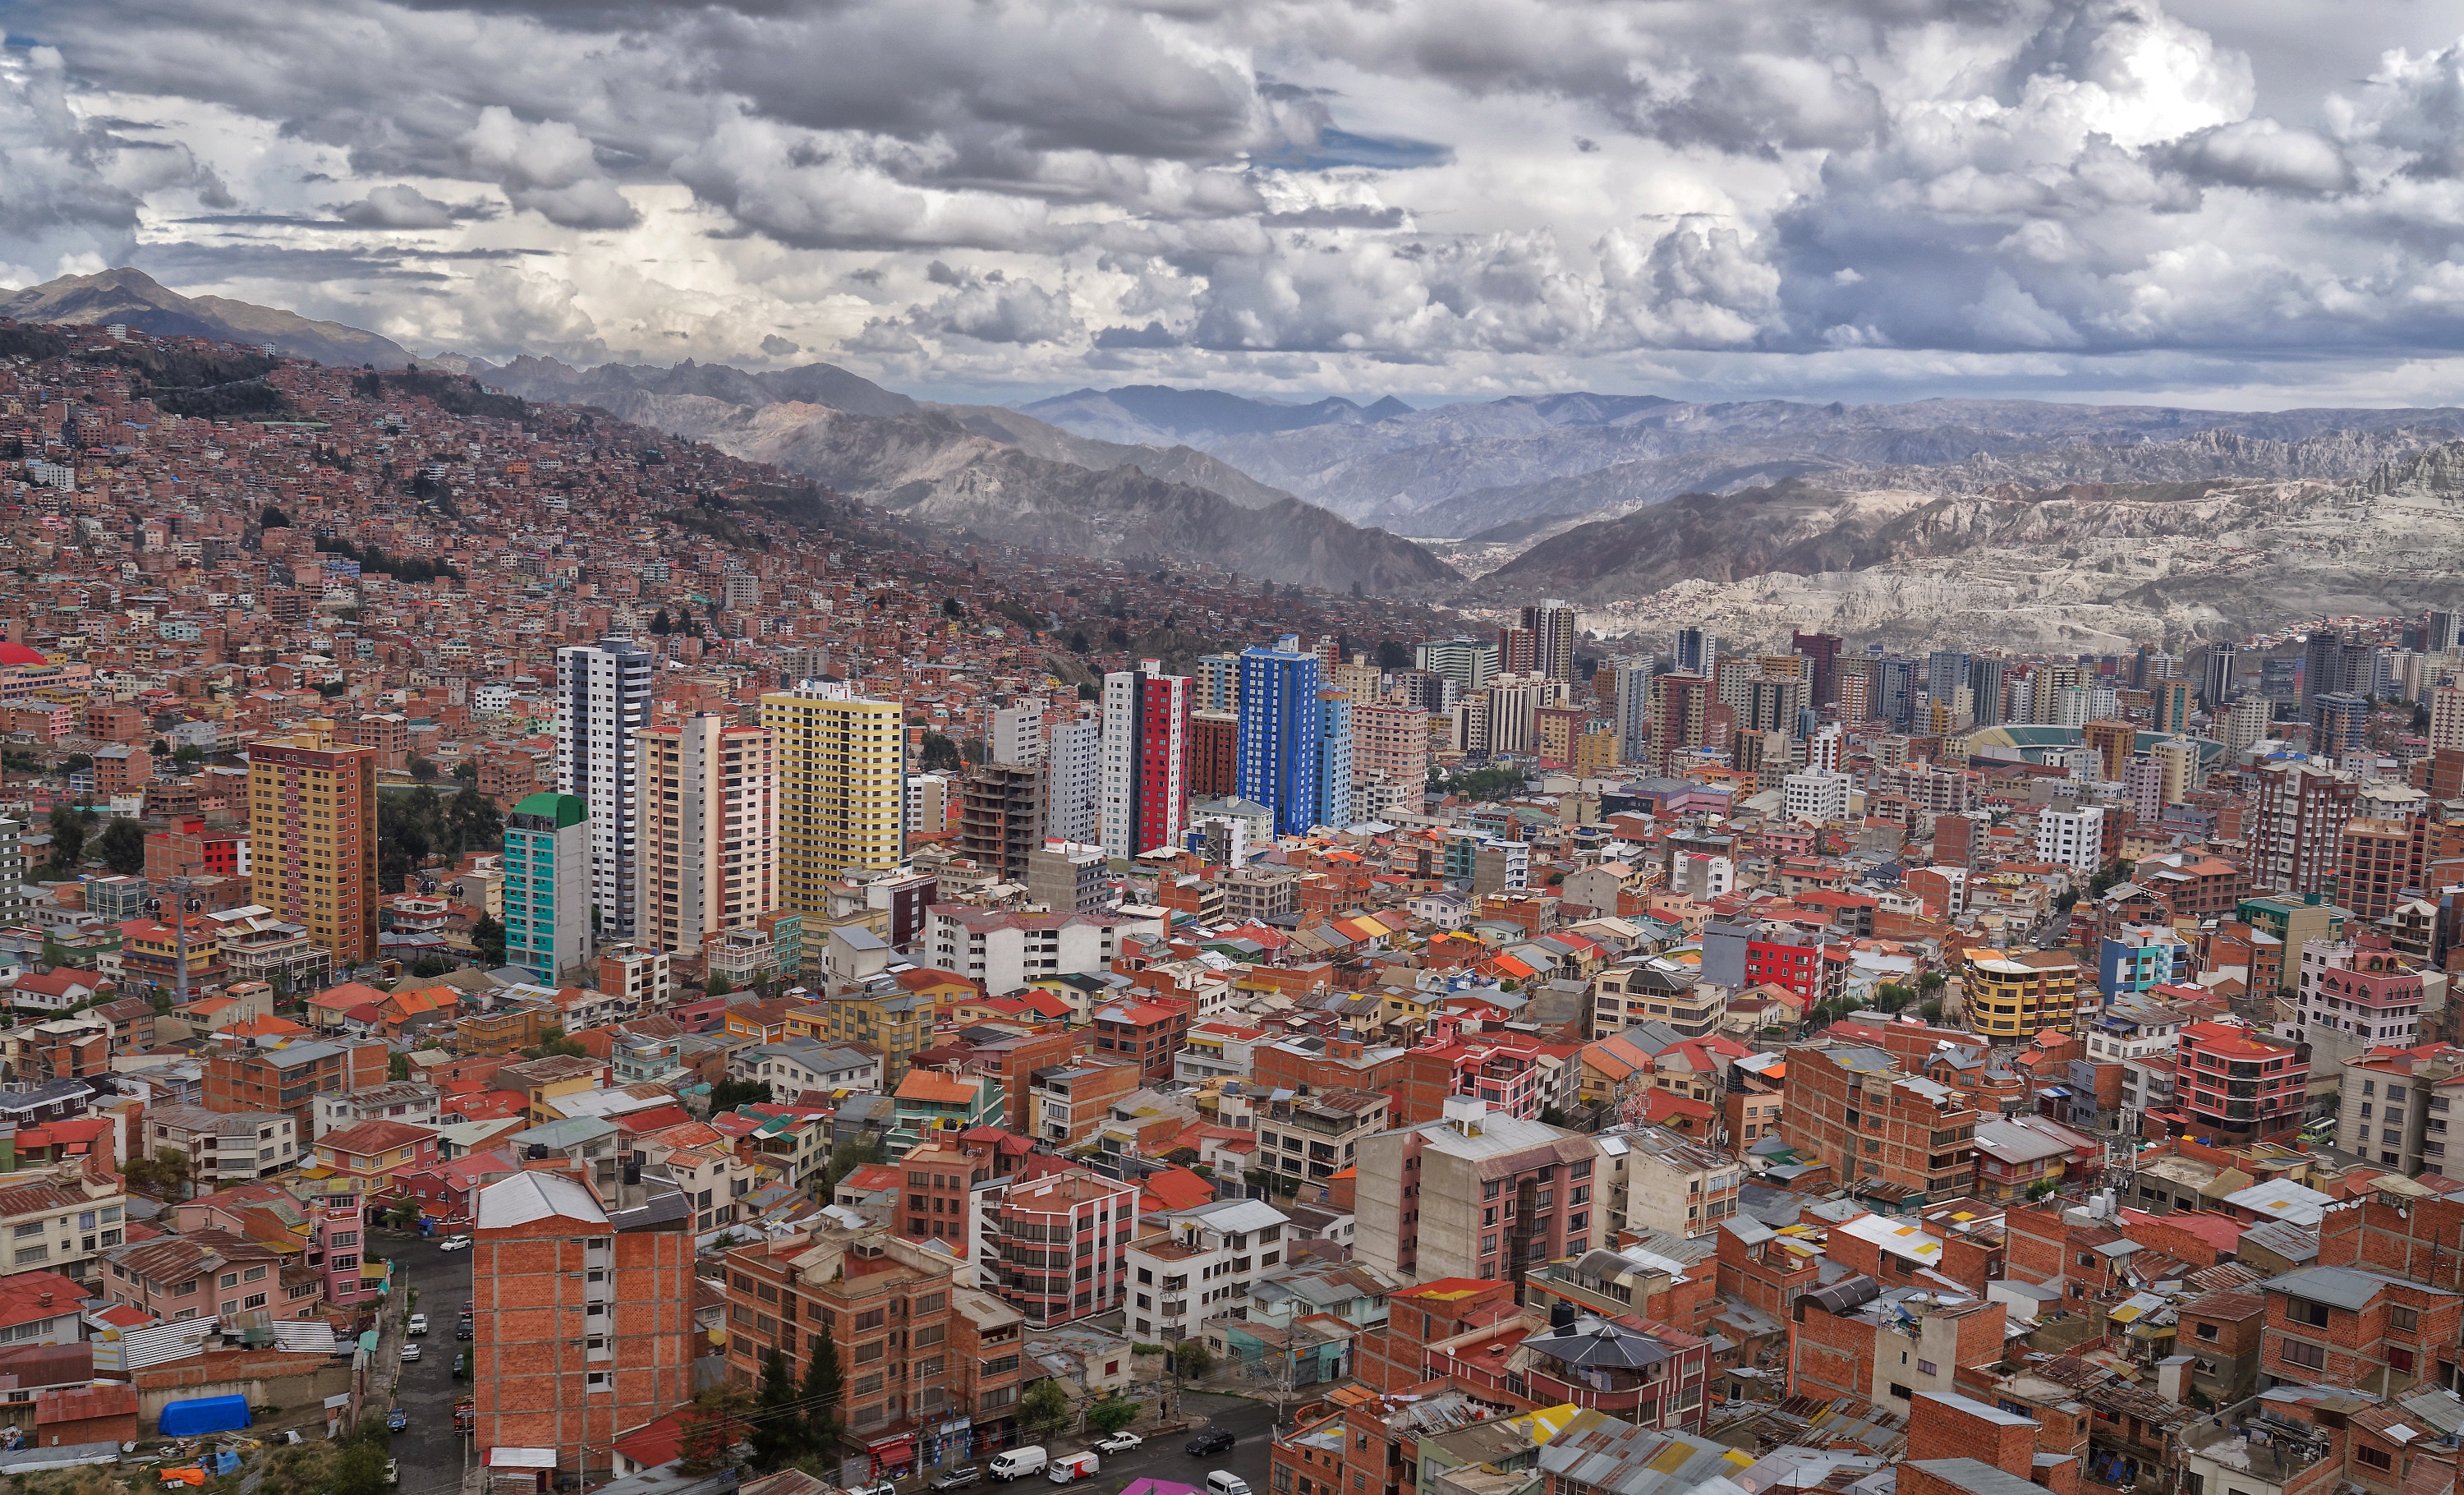 General 3000x1820 La Paz (City) Bolivia city cityscape